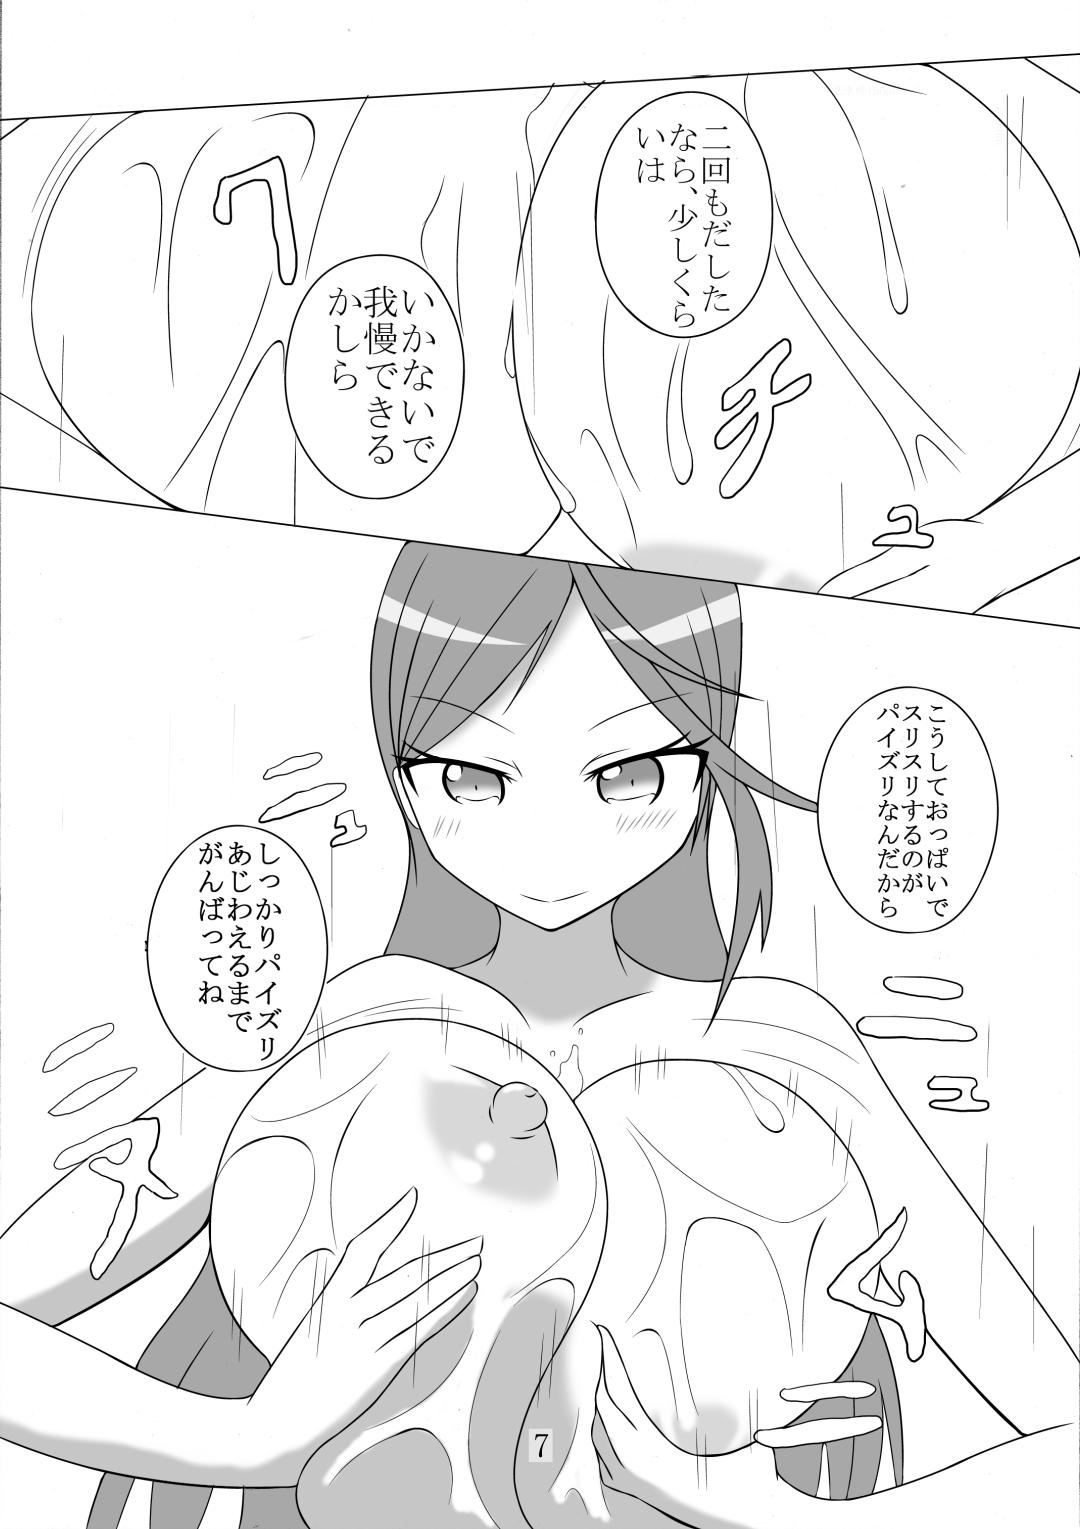 Cam Girl Paizuri Manga Shuu - Dungeon ni deai o motomeru no wa machigatteiru darou ka Shokugeki no soma Triage x Maledom - Page 7